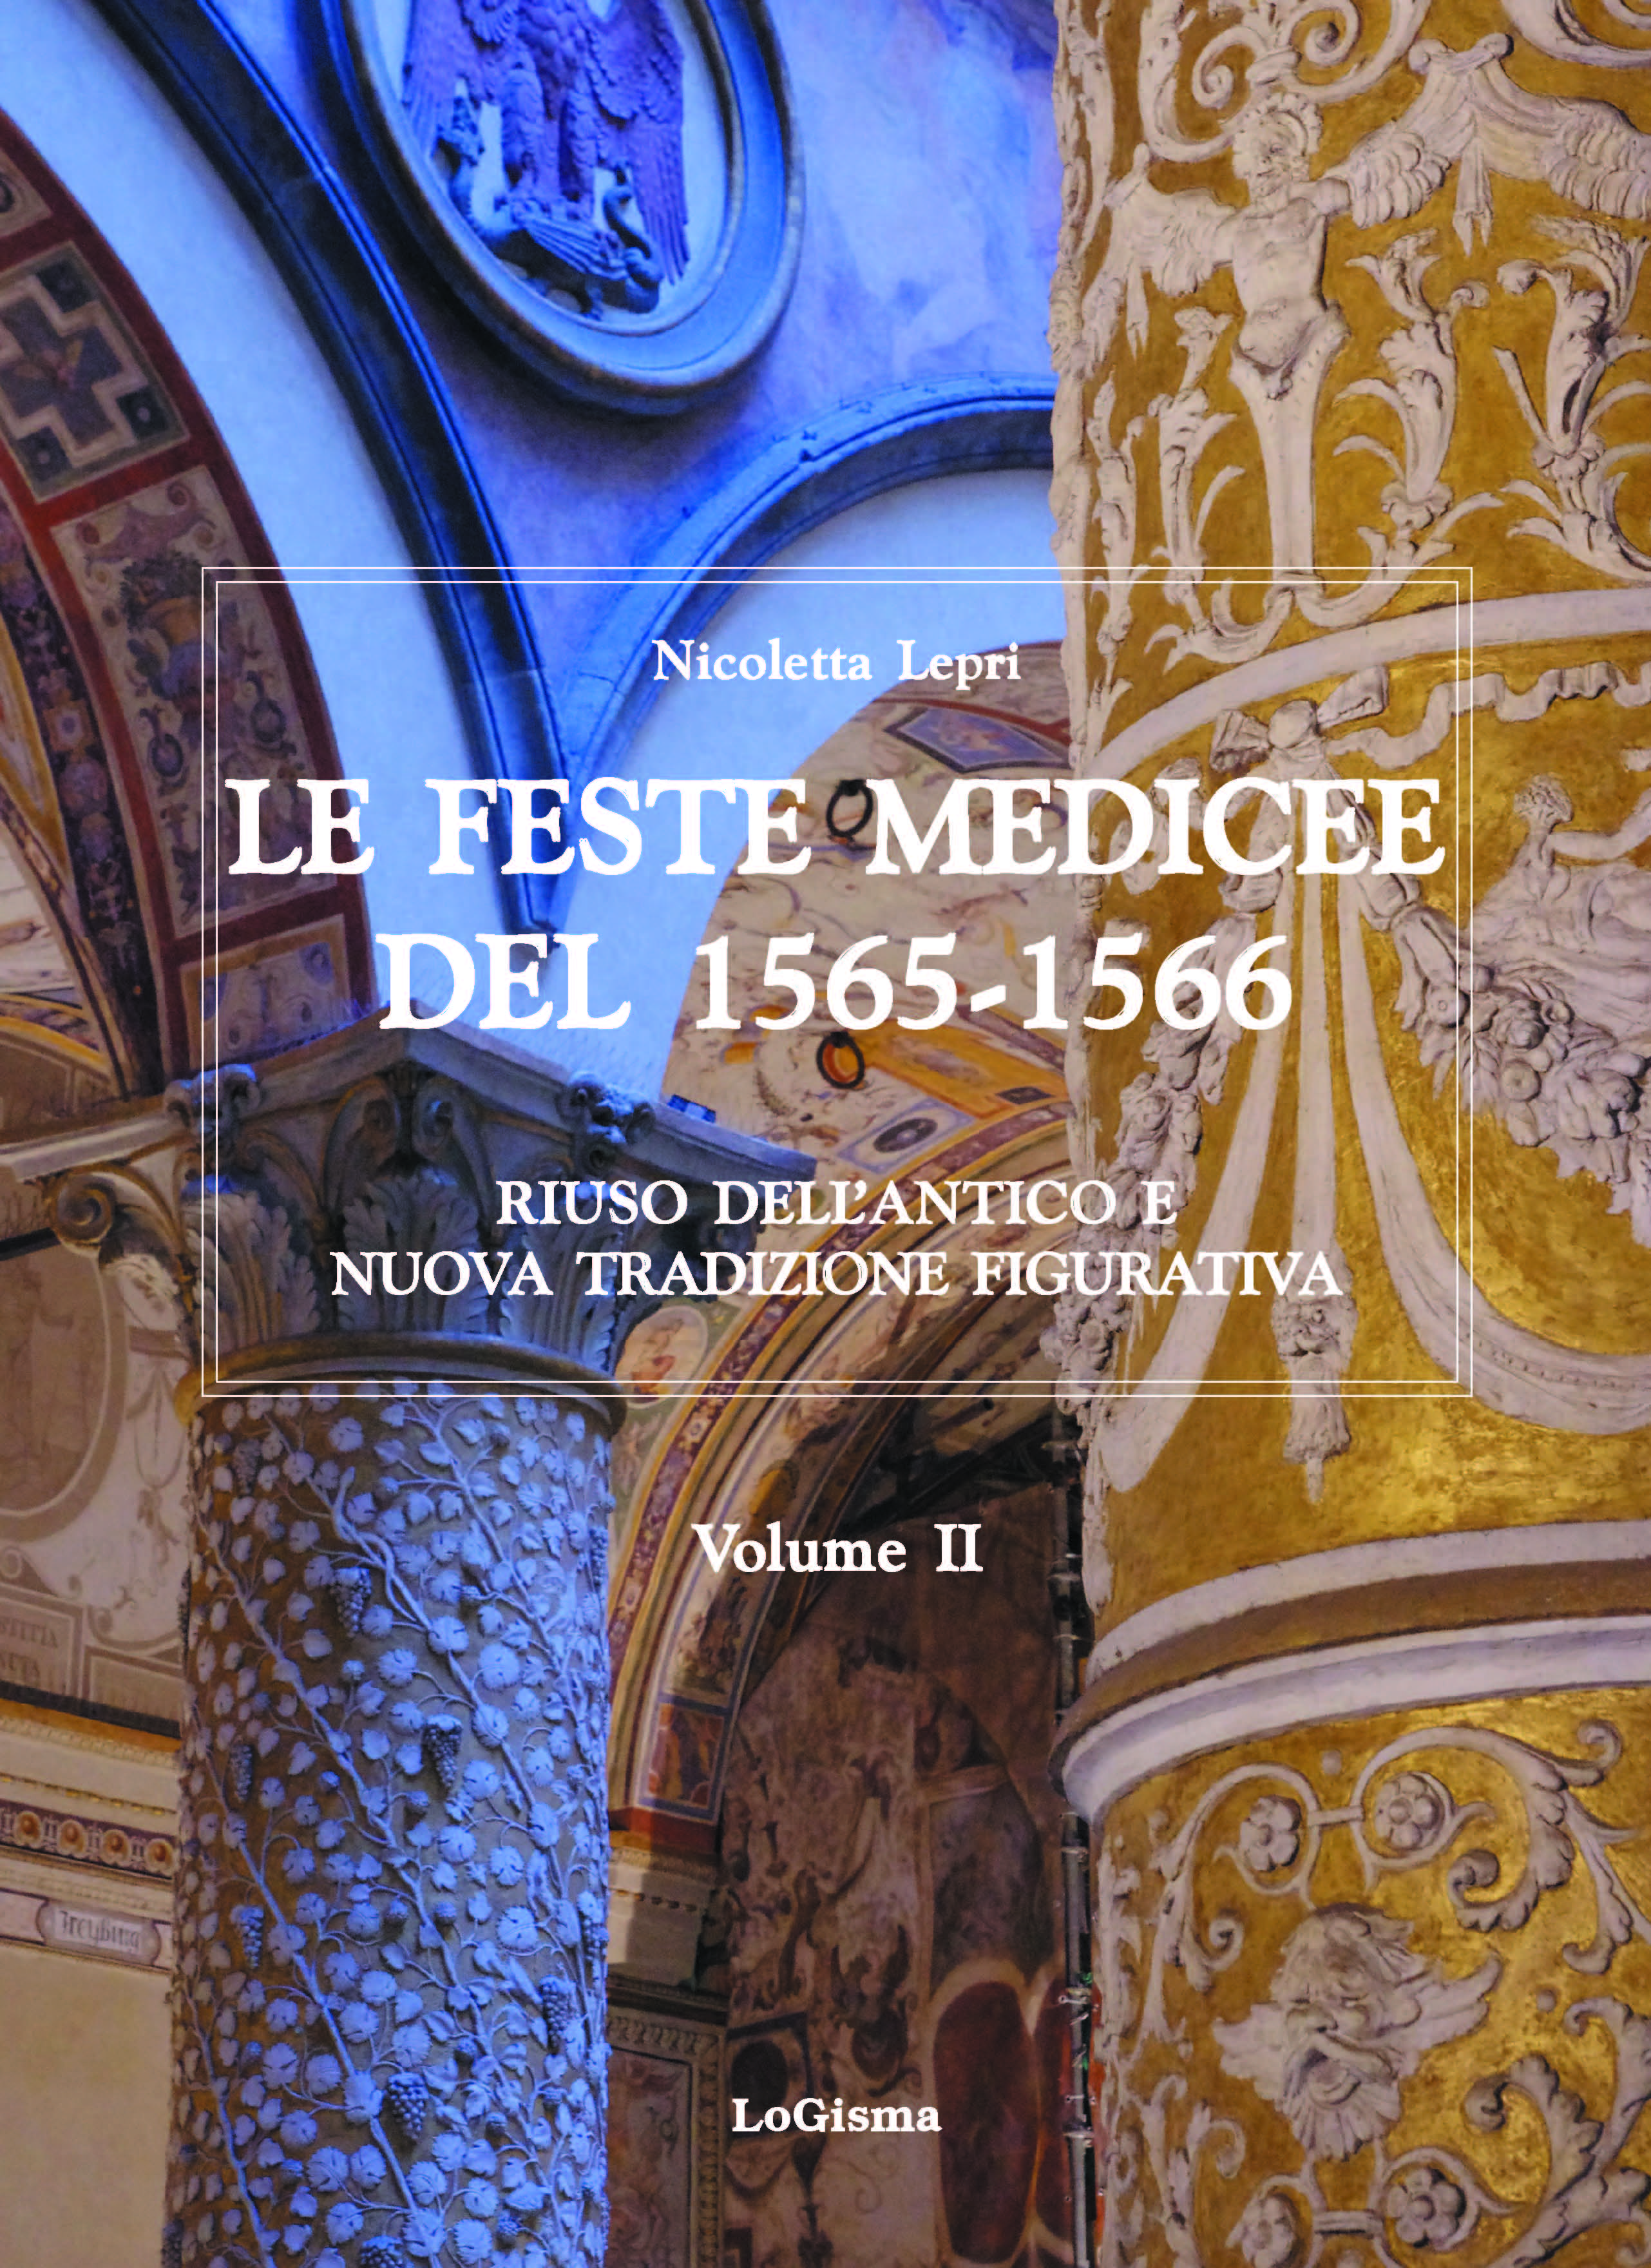 E-book, Le feste medicee del 1565-1566 : riuso dell'antico e nuova tradizione figurativa, LoGisma editore